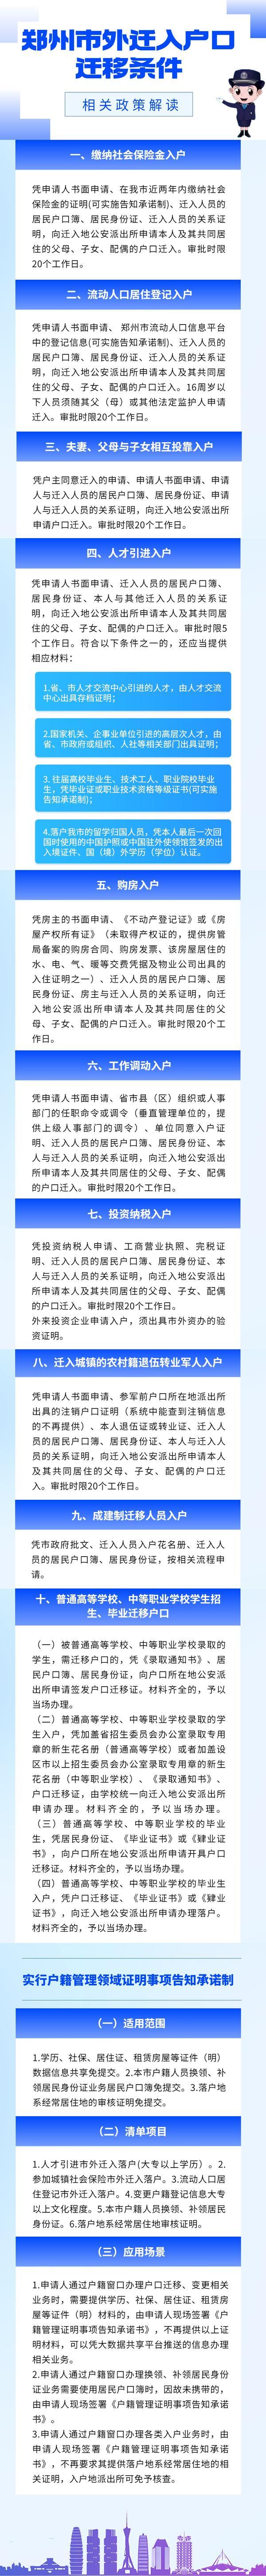 郑州出台户籍制度改革新政：落户不受社保缴费、居住年限限制